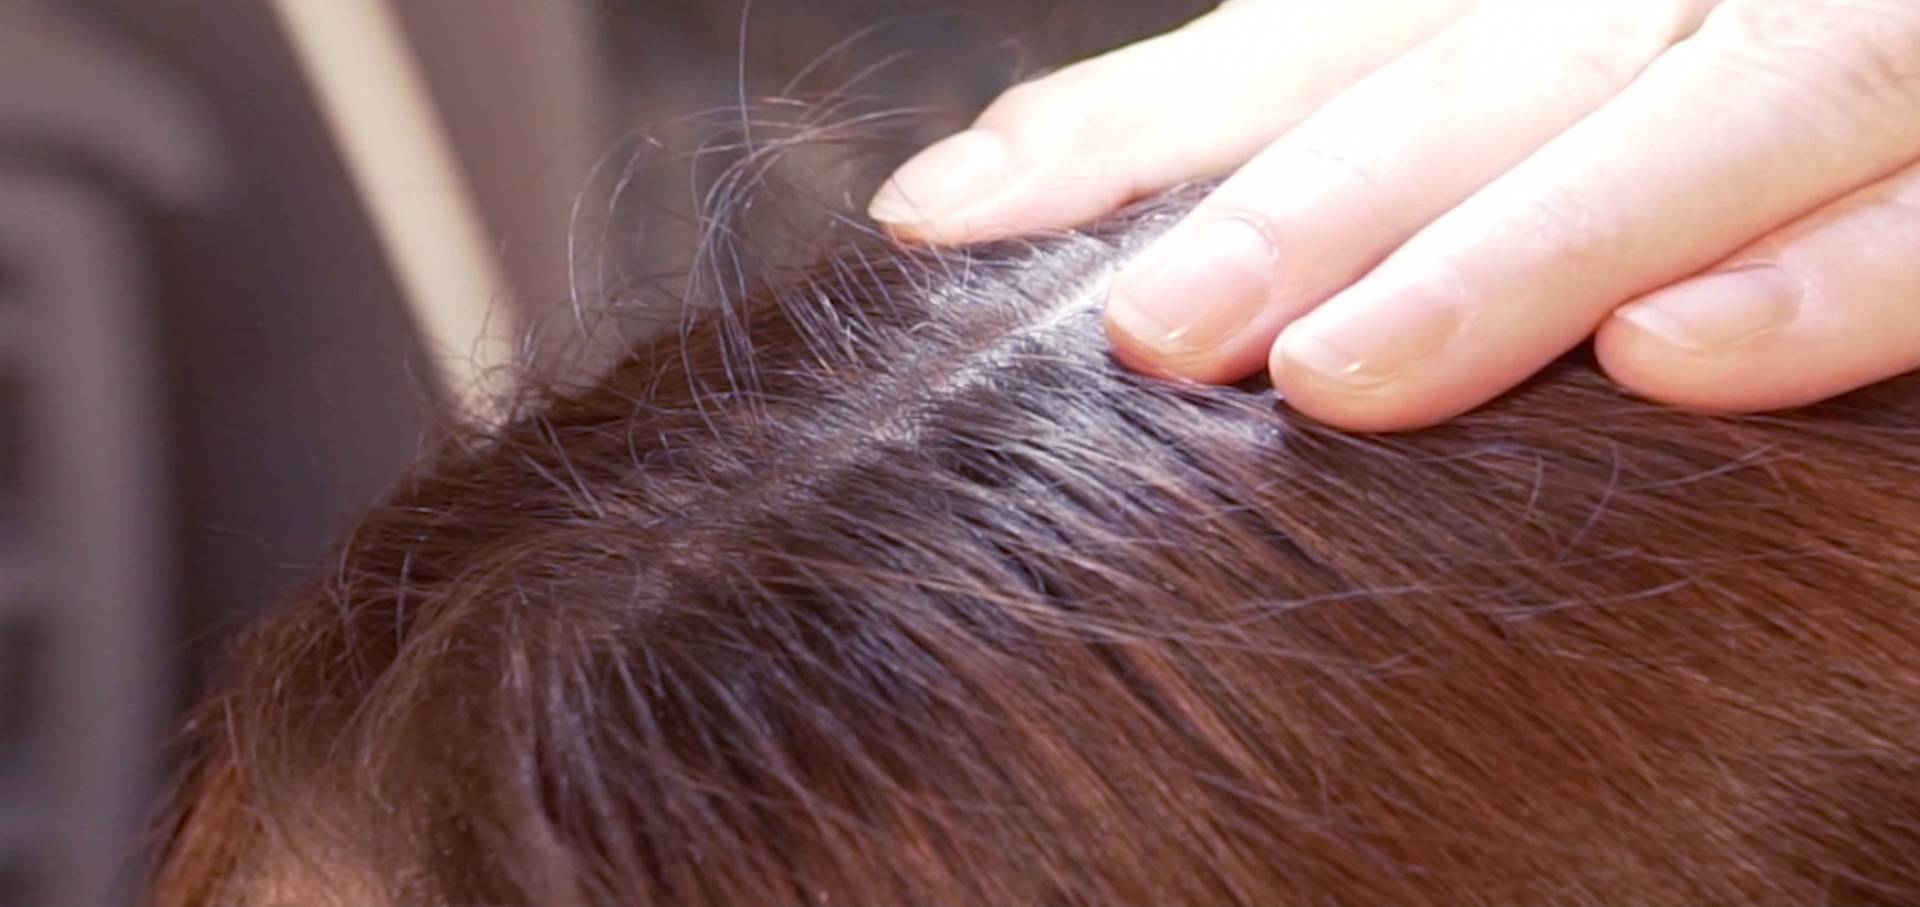 Co da się wyczytać z włosa? To może nawet ratować życie